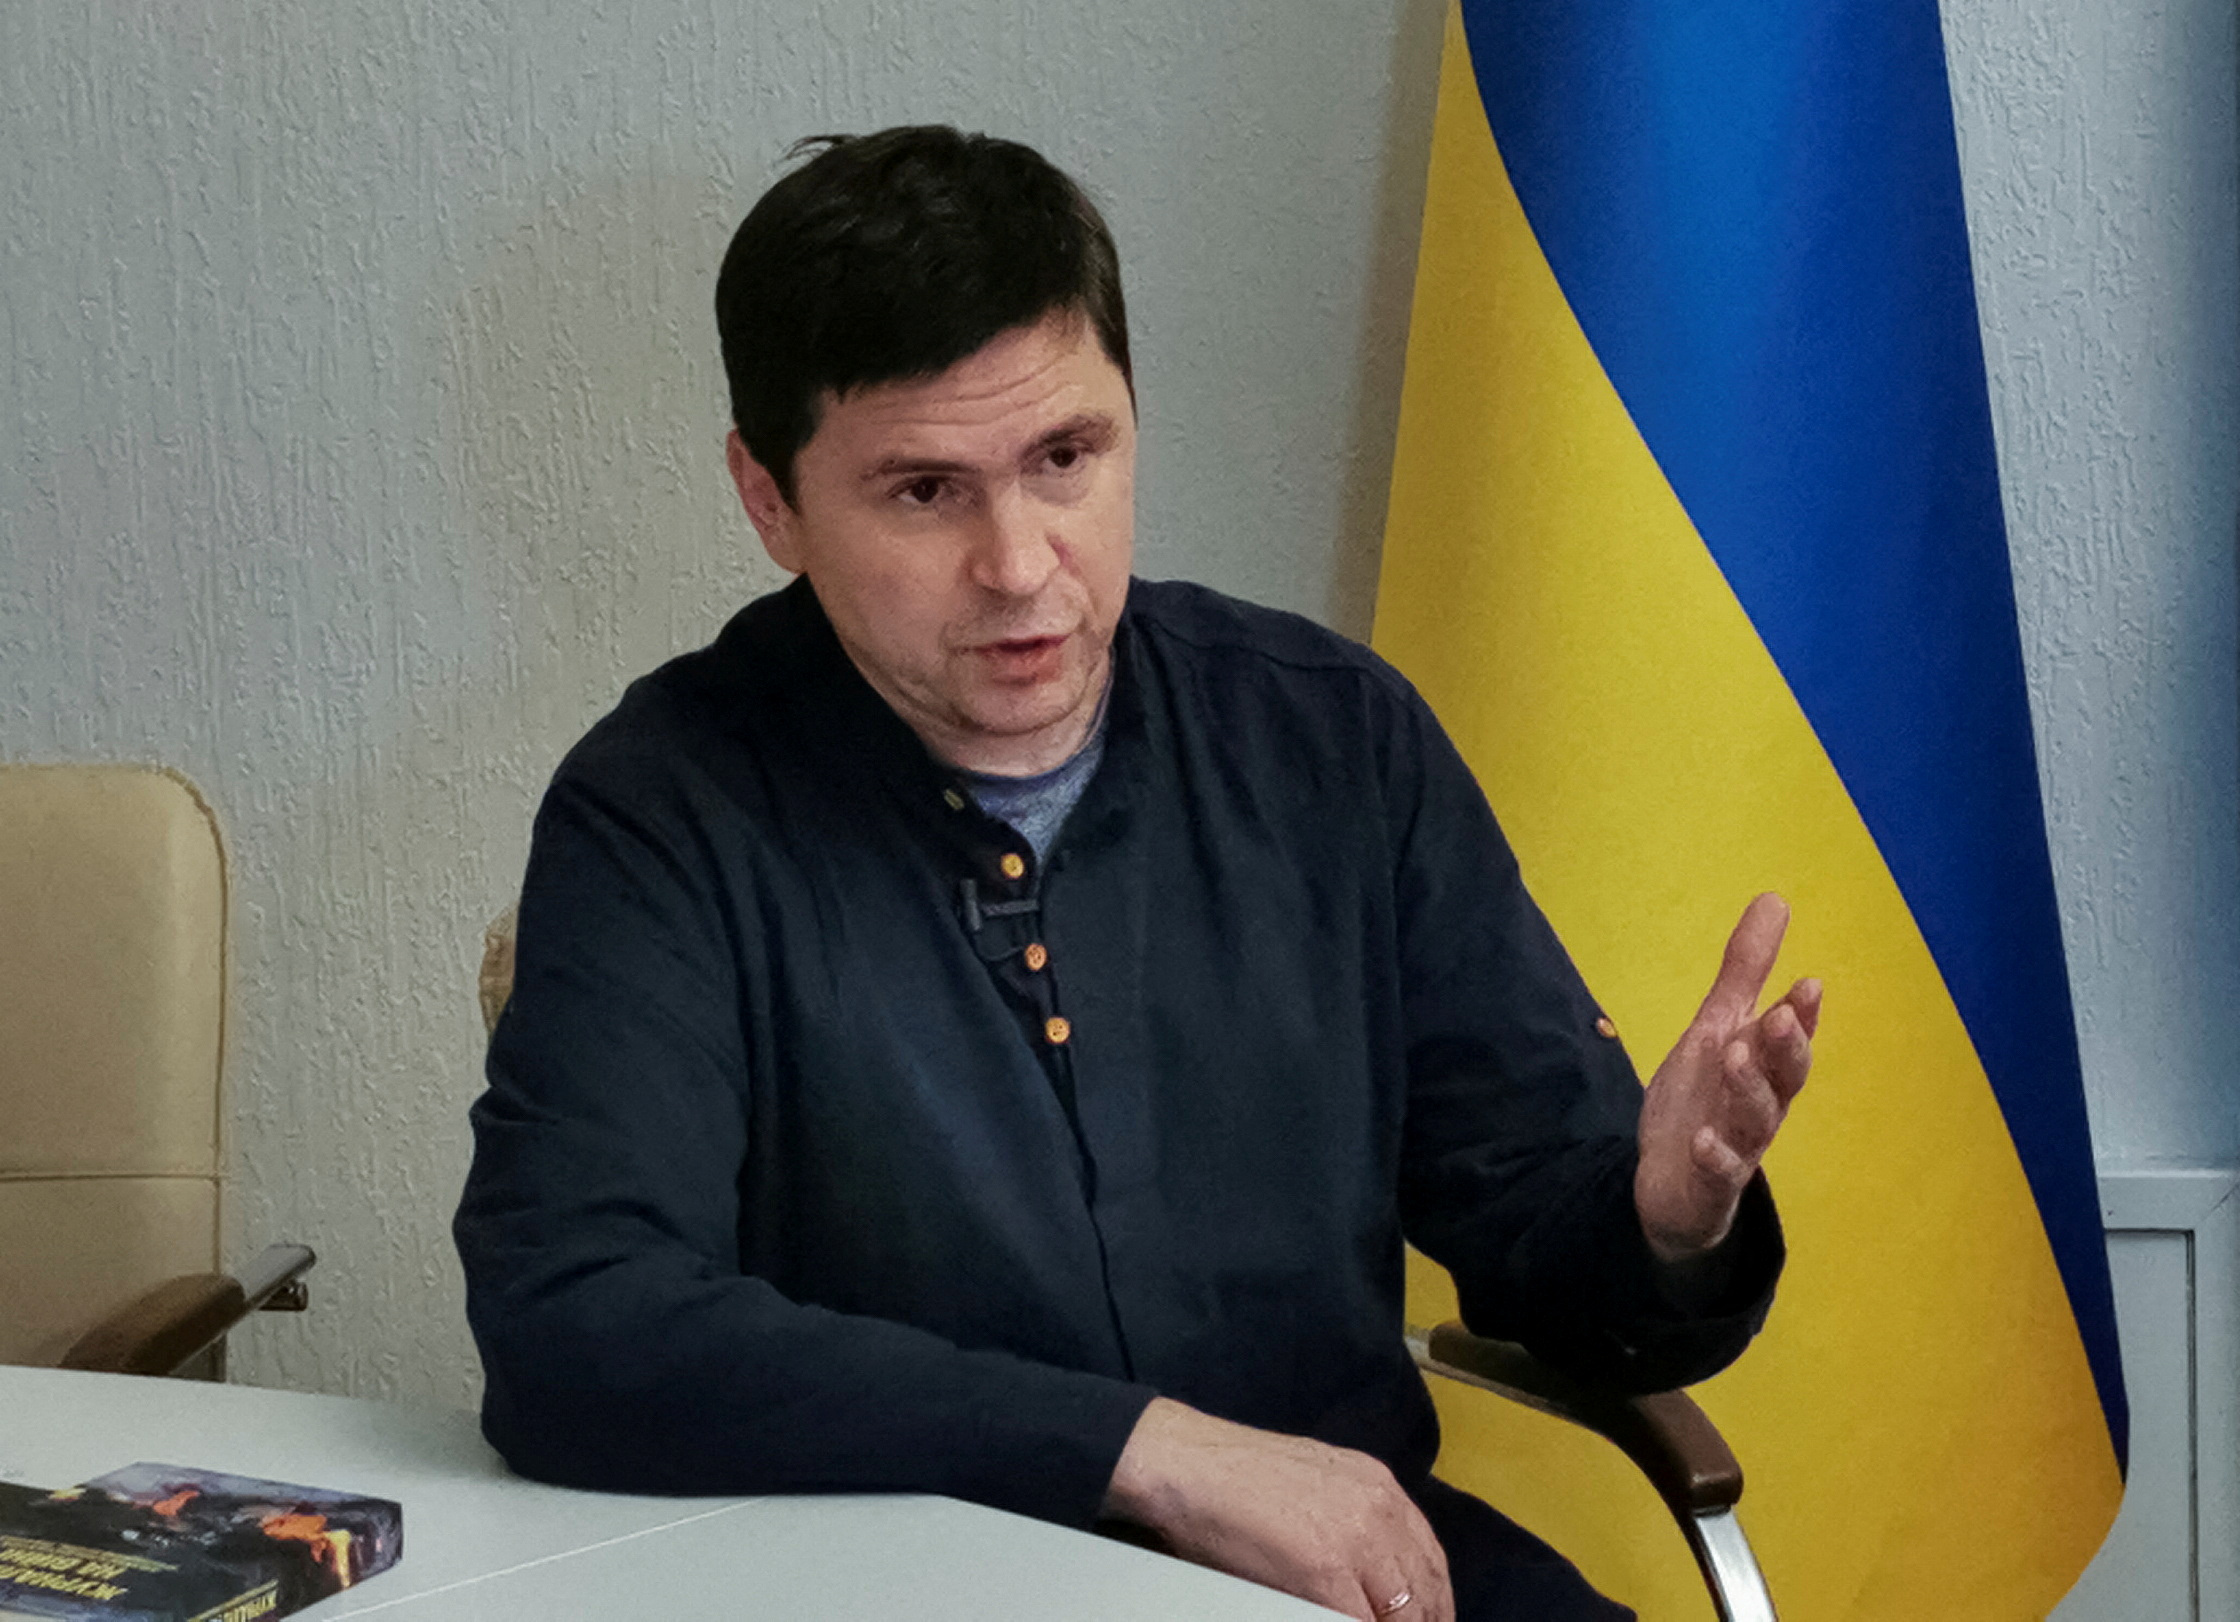 Mykhailo Podolyak, political advisor to Ukrainian President, speaks during an interview in Kyiv